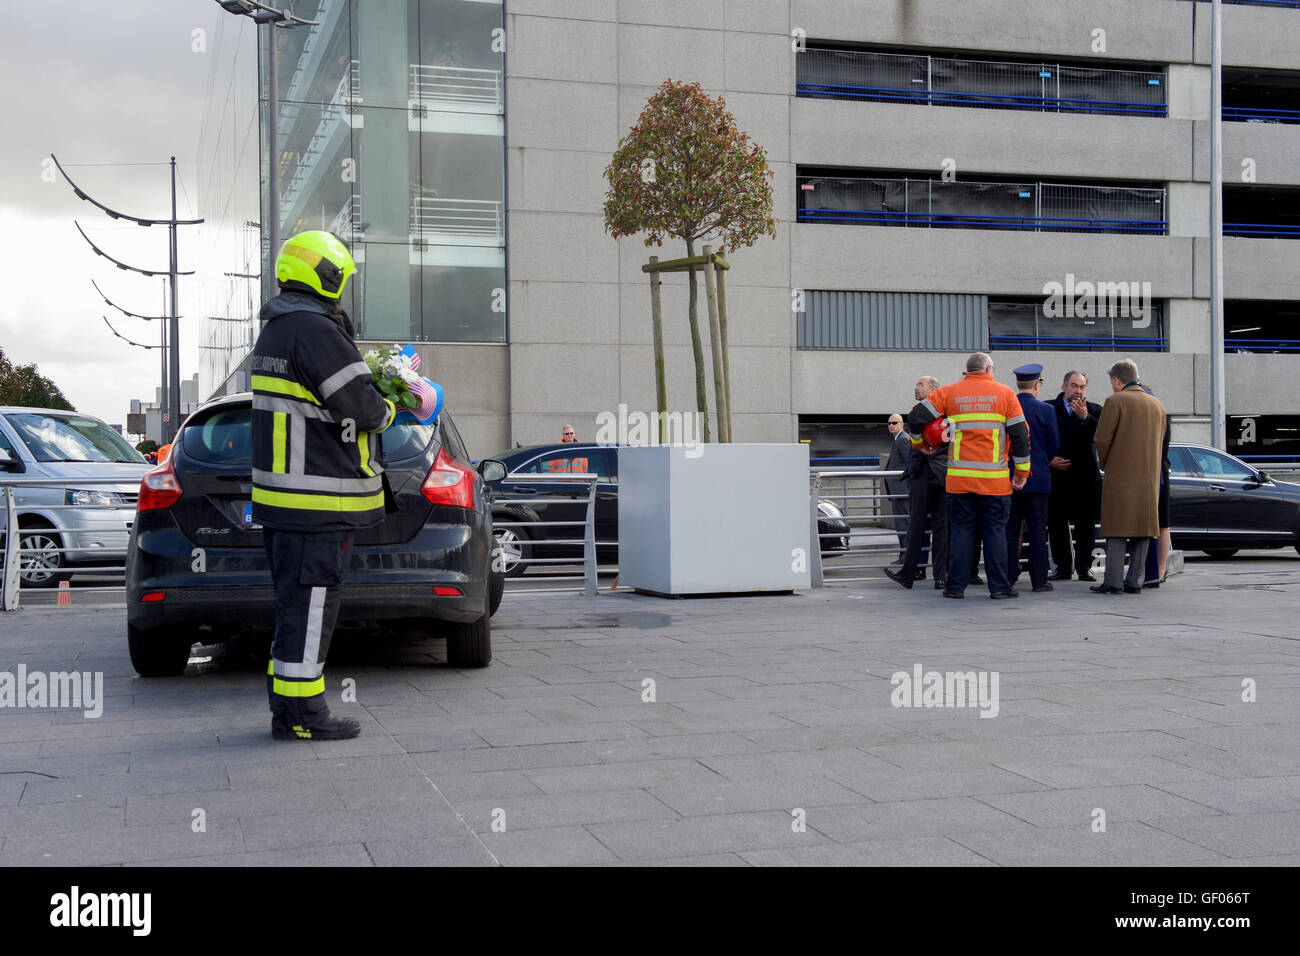 Un pompier portant une couronne s'en tant que Secrétaire Kerry est arrivé à l'aéroport de Bruxelles National à visiter le terminal attaqué par des terroristes le 22 mars Banque D'Images